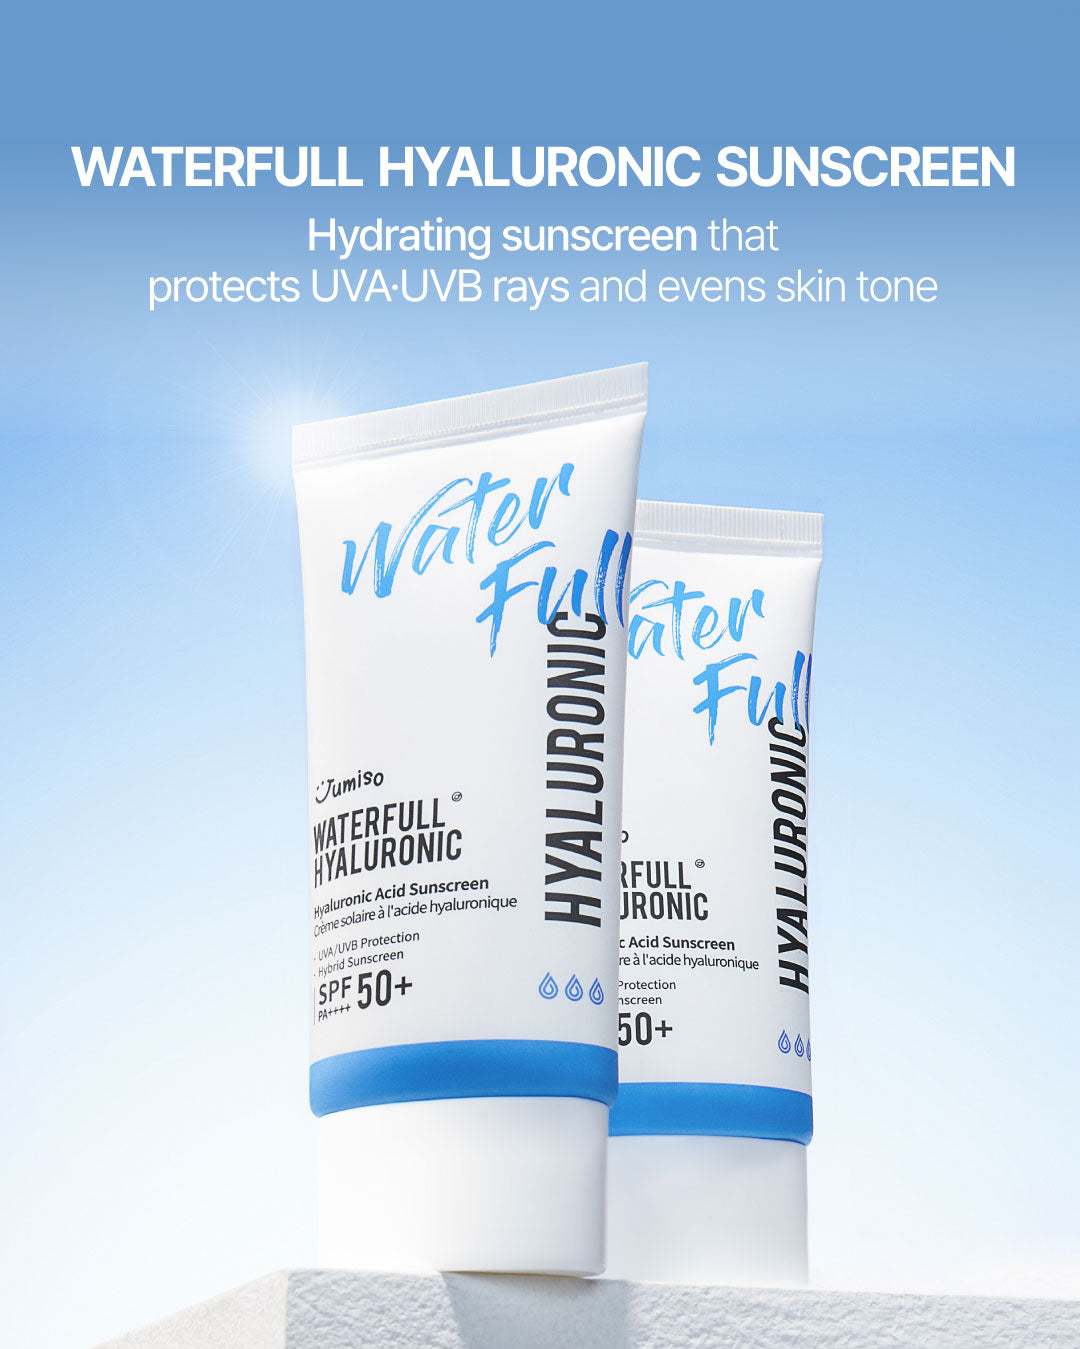 [BOGO] Waterfull Hyaluronic Acid Sunscreen SPF50+ PA++++